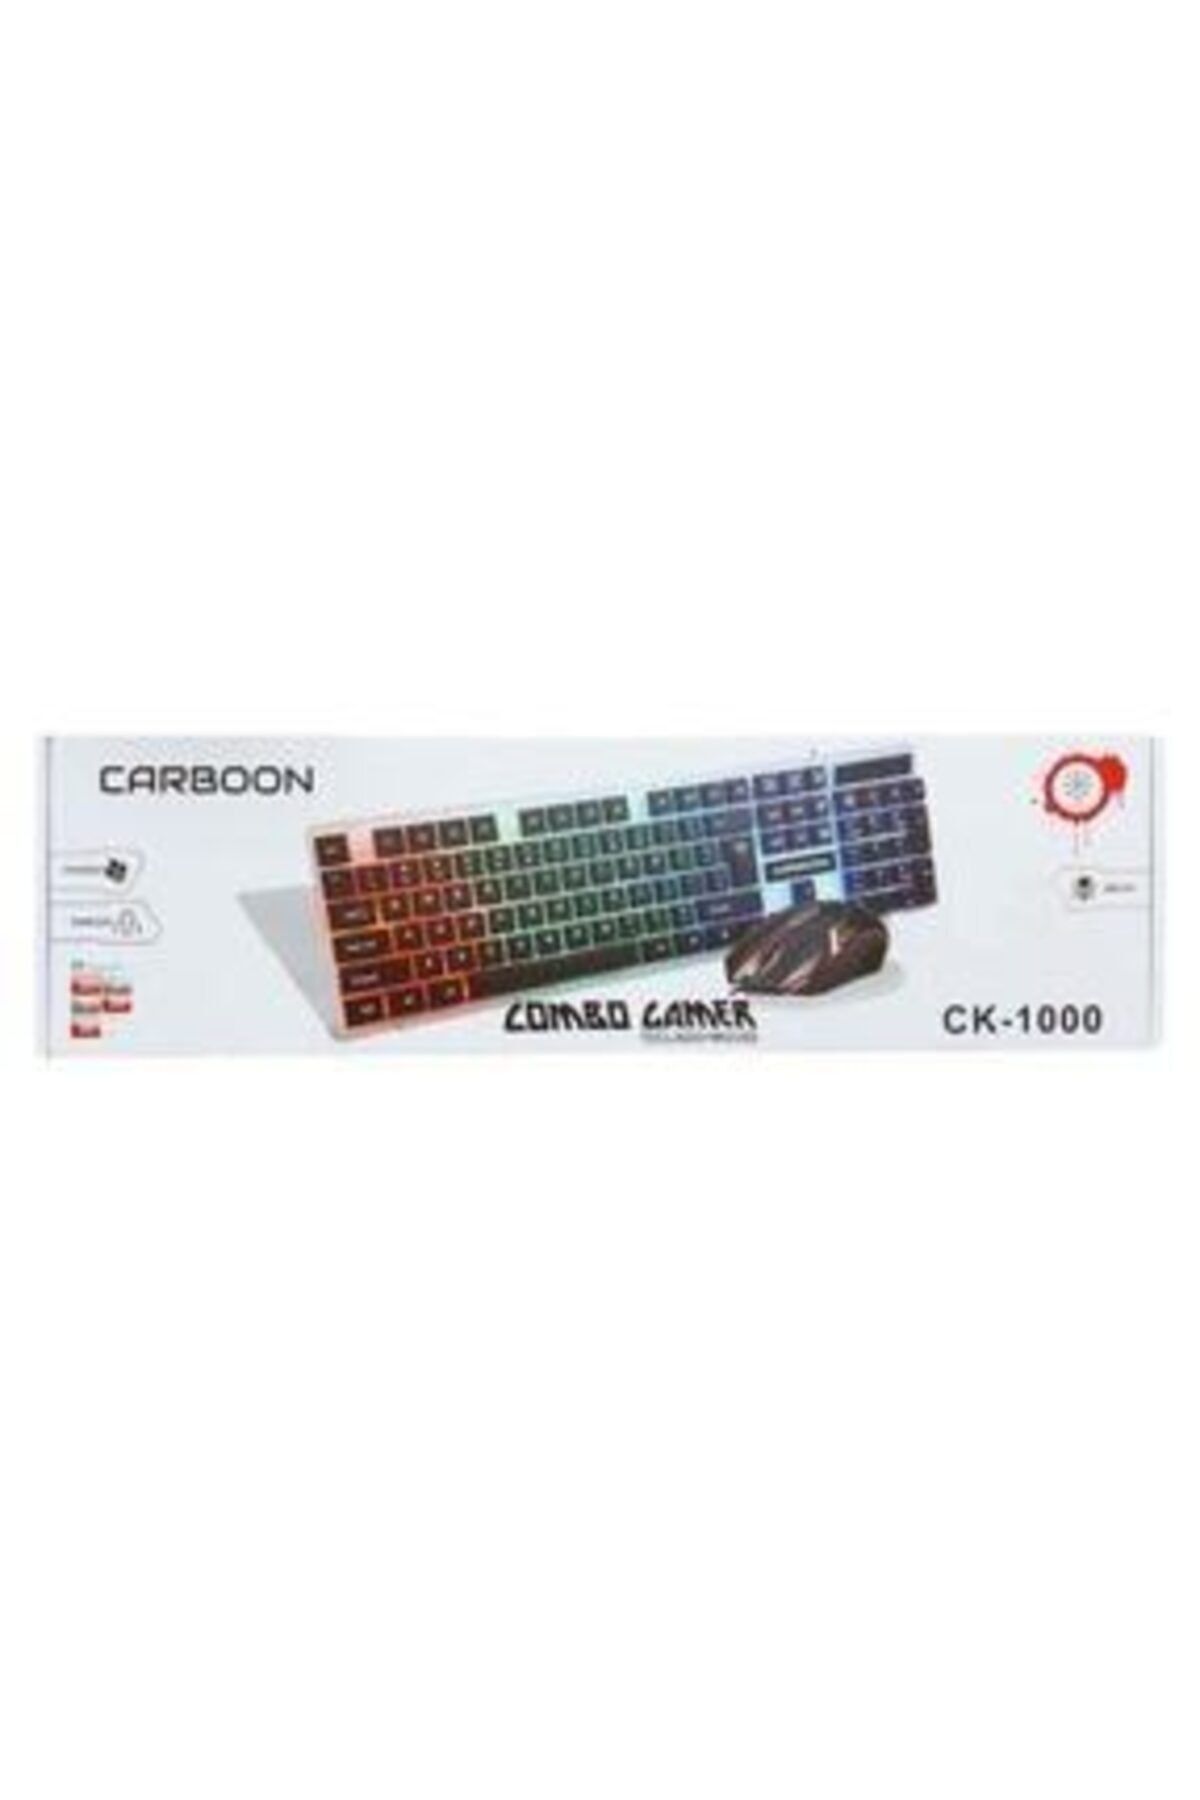 Carboon Carbon Ck-1000 Işıklı Kablolu Gaming Klavye Ve Mouse Set Ck-1000